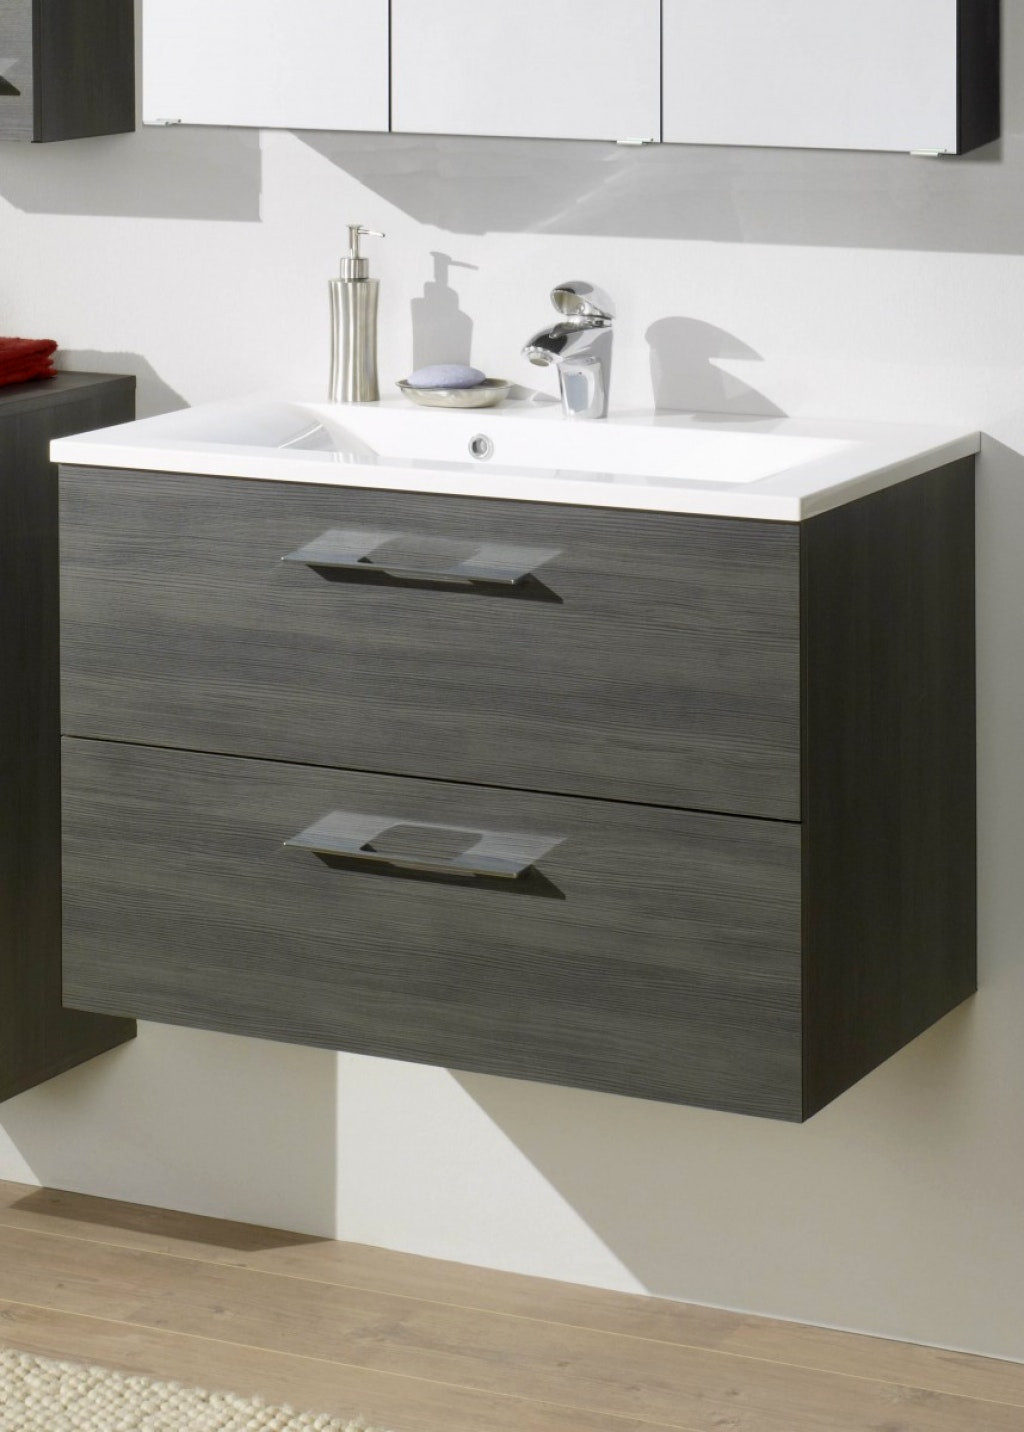 Waschbecken Mit Unterschrank Ikea
 Ikea Waschbecken Unterschrank Holz – Wohn design